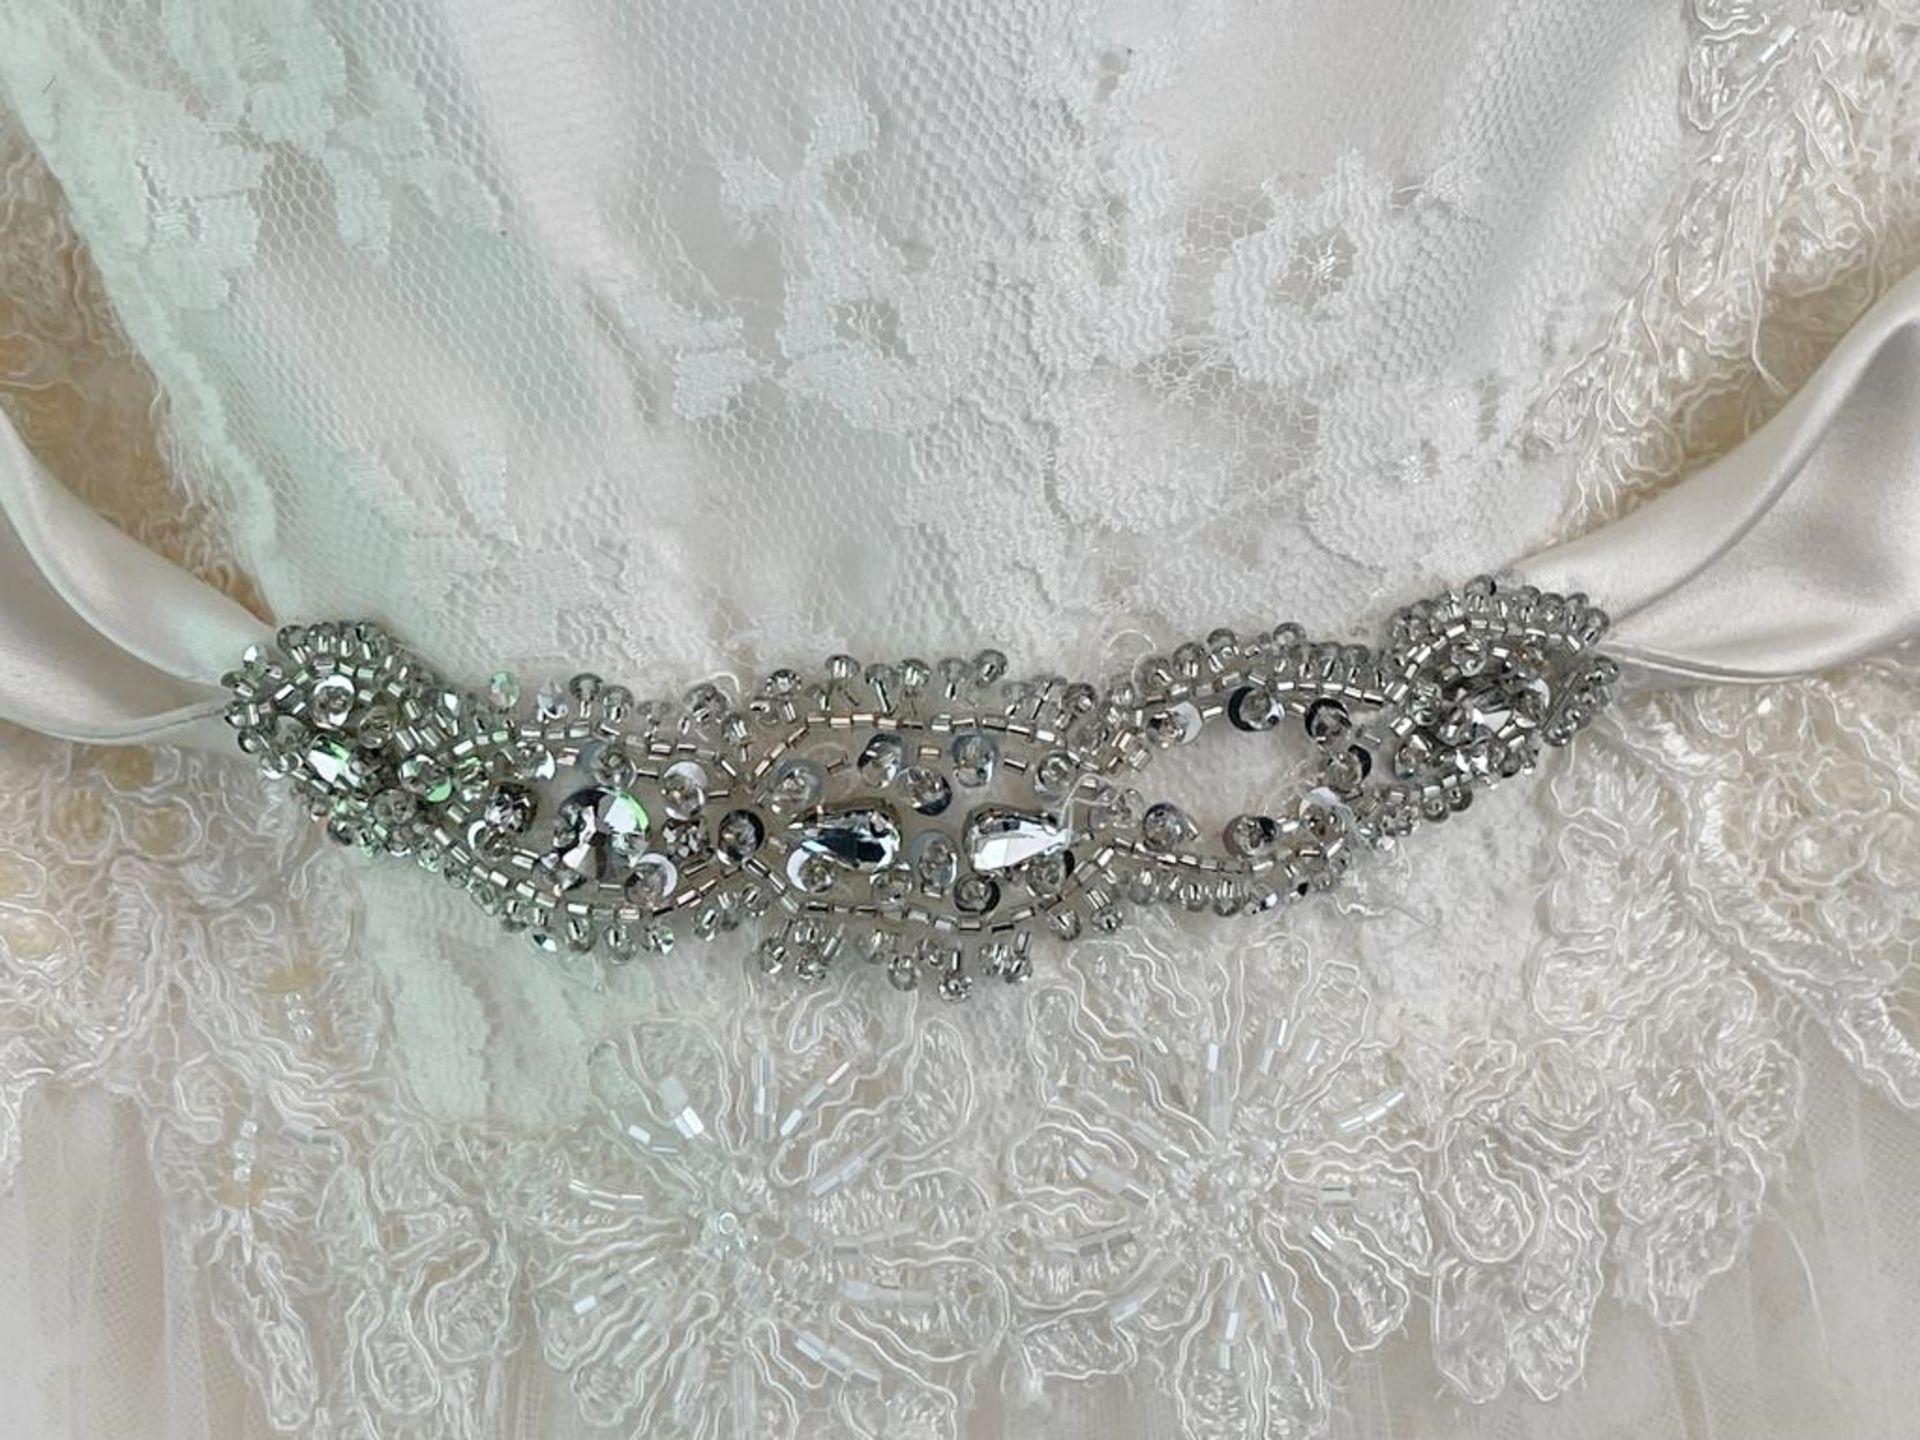 1 x LUSAN MANDONGUS 'Radella' Designer Wedding Dress Bridal Gown - Size: UK 16 - Original RRP £1,560 - Image 5 of 13